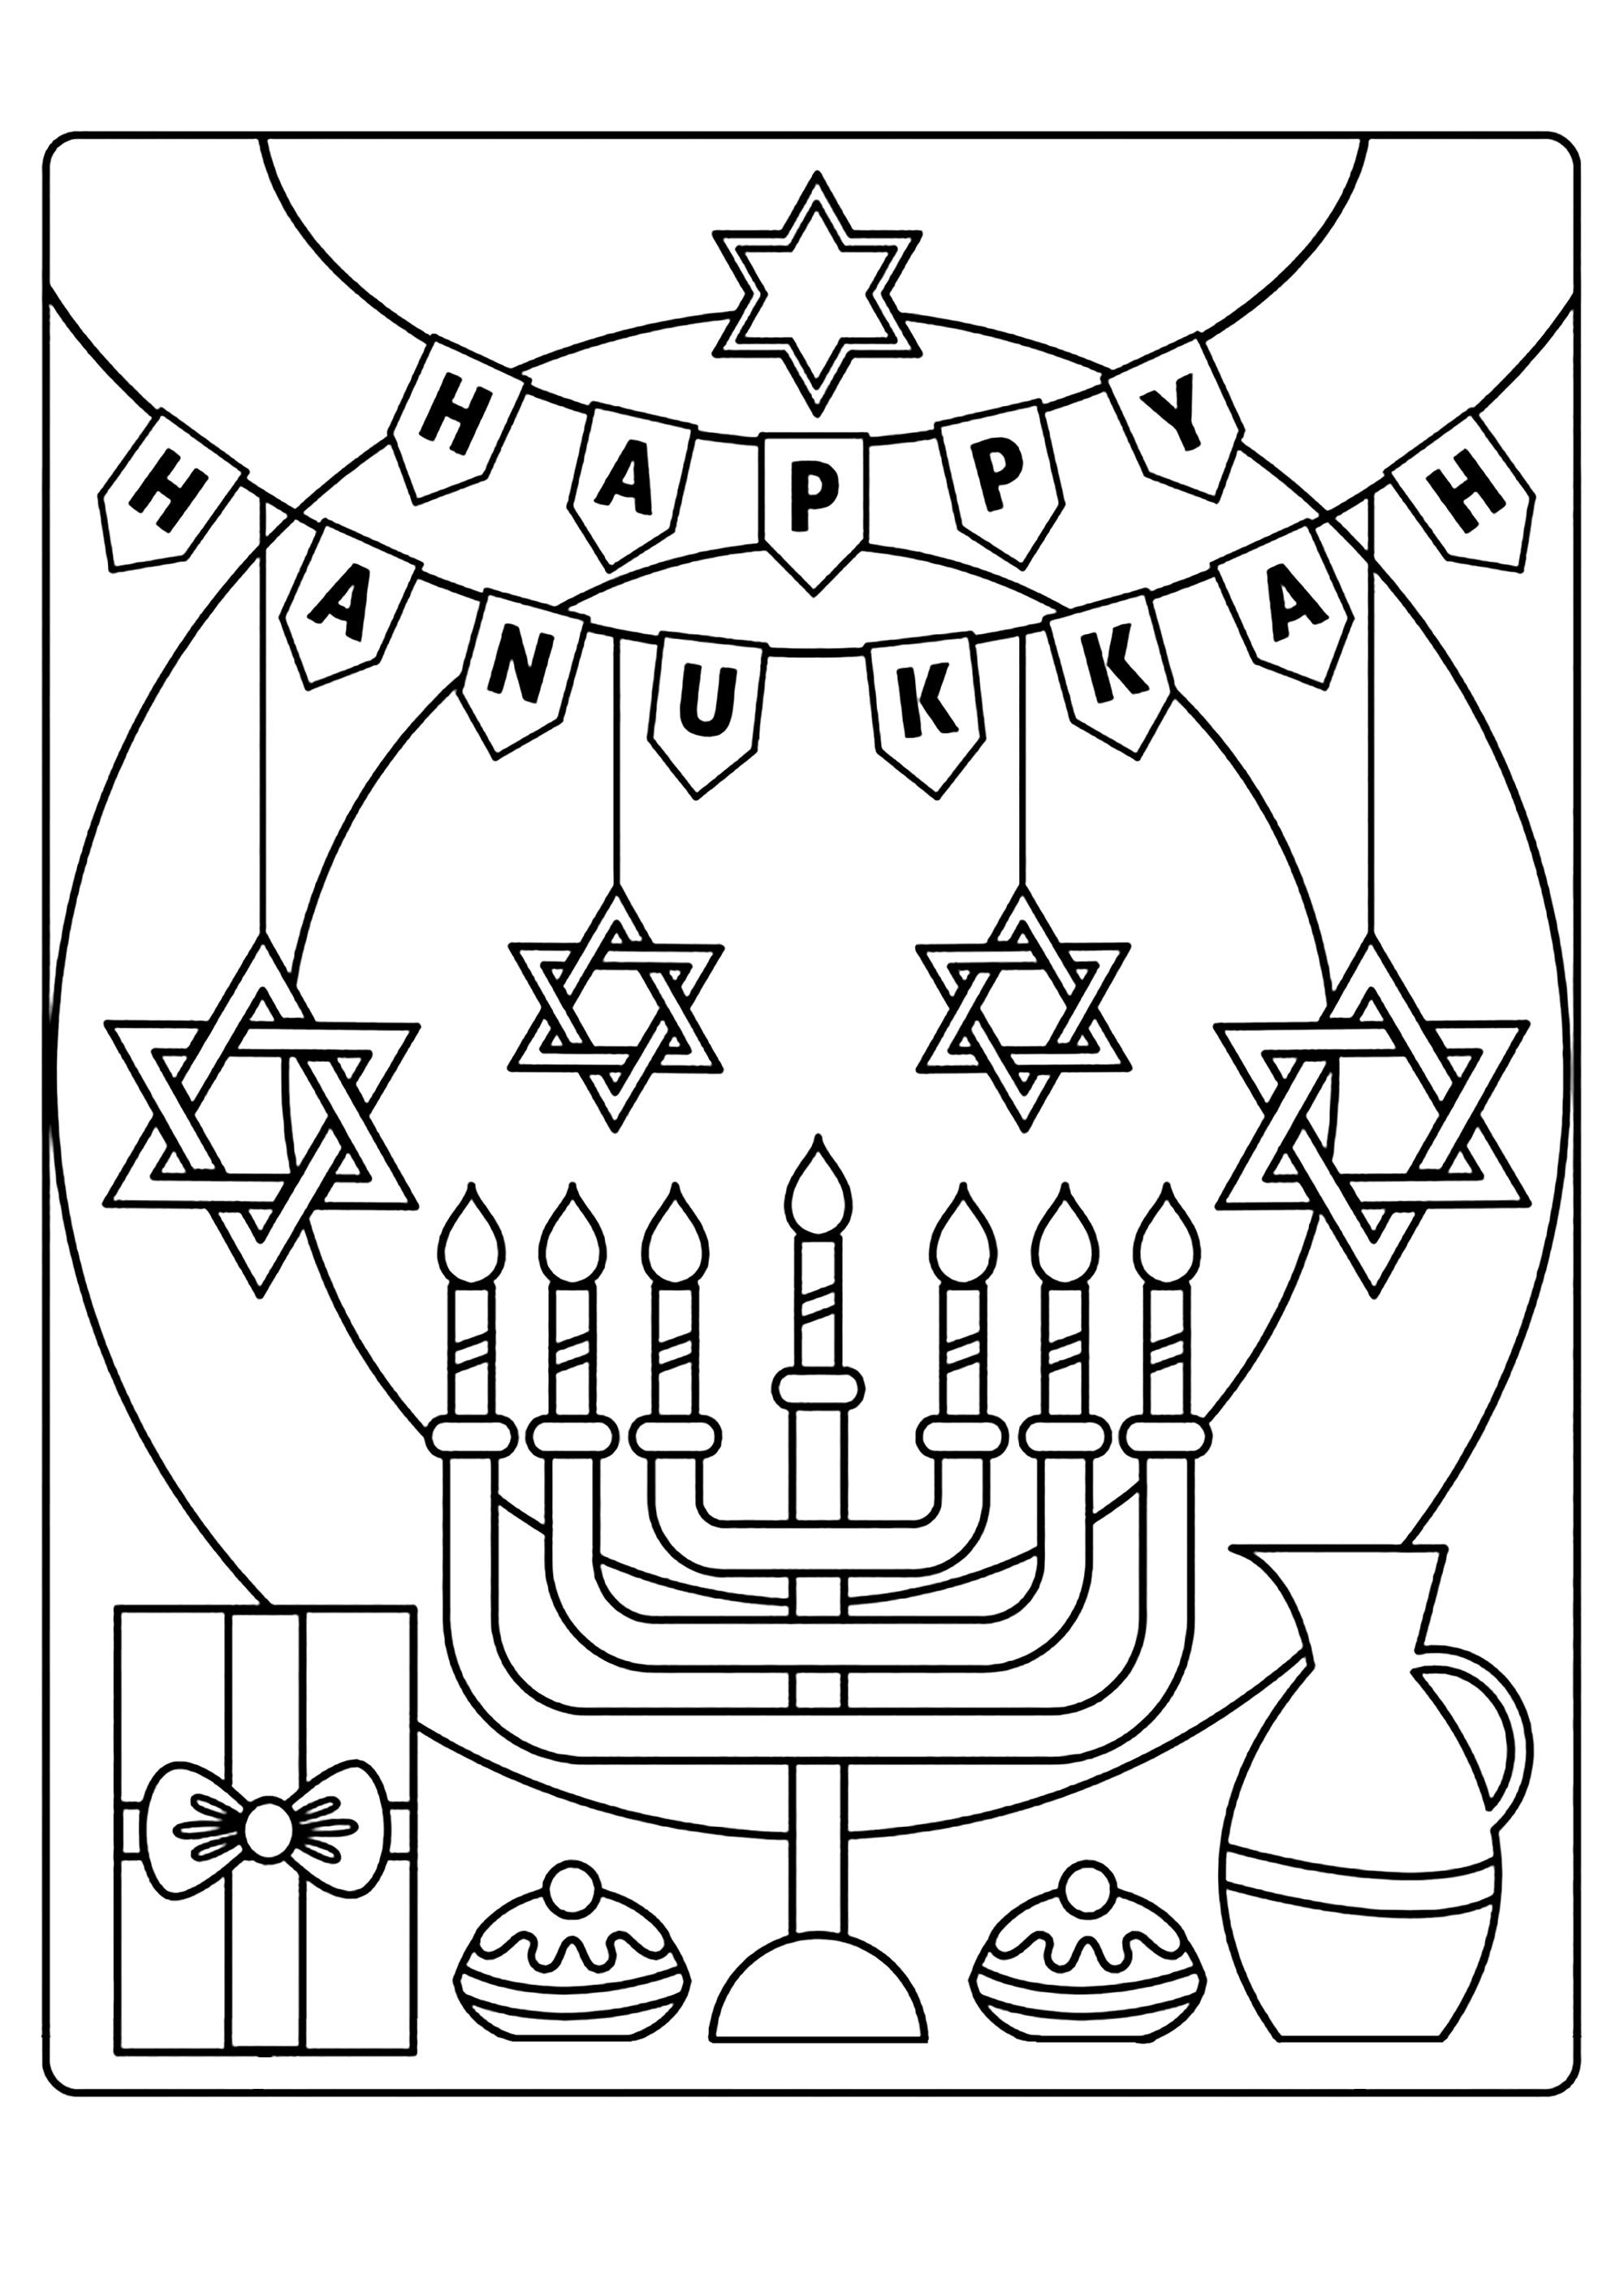 Happy Hanukkah. Hanukkah est une fête juive d'institution rabbinique, commémorant la réinauguration de l'autel des offrandes dans le Second Temple de Jérusalem